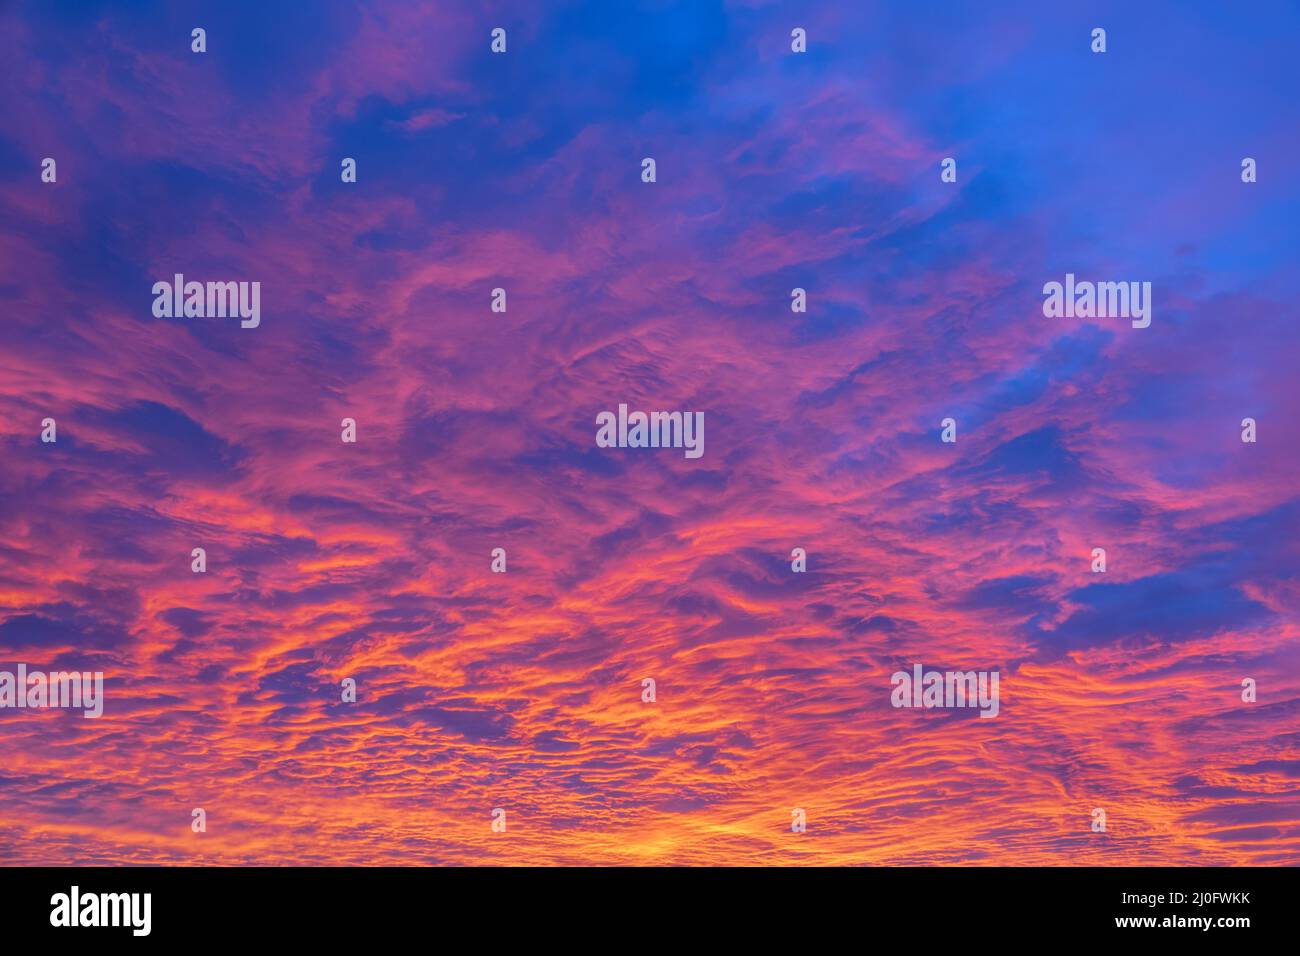 Amazing Colorful Sunset Background Stock Photo